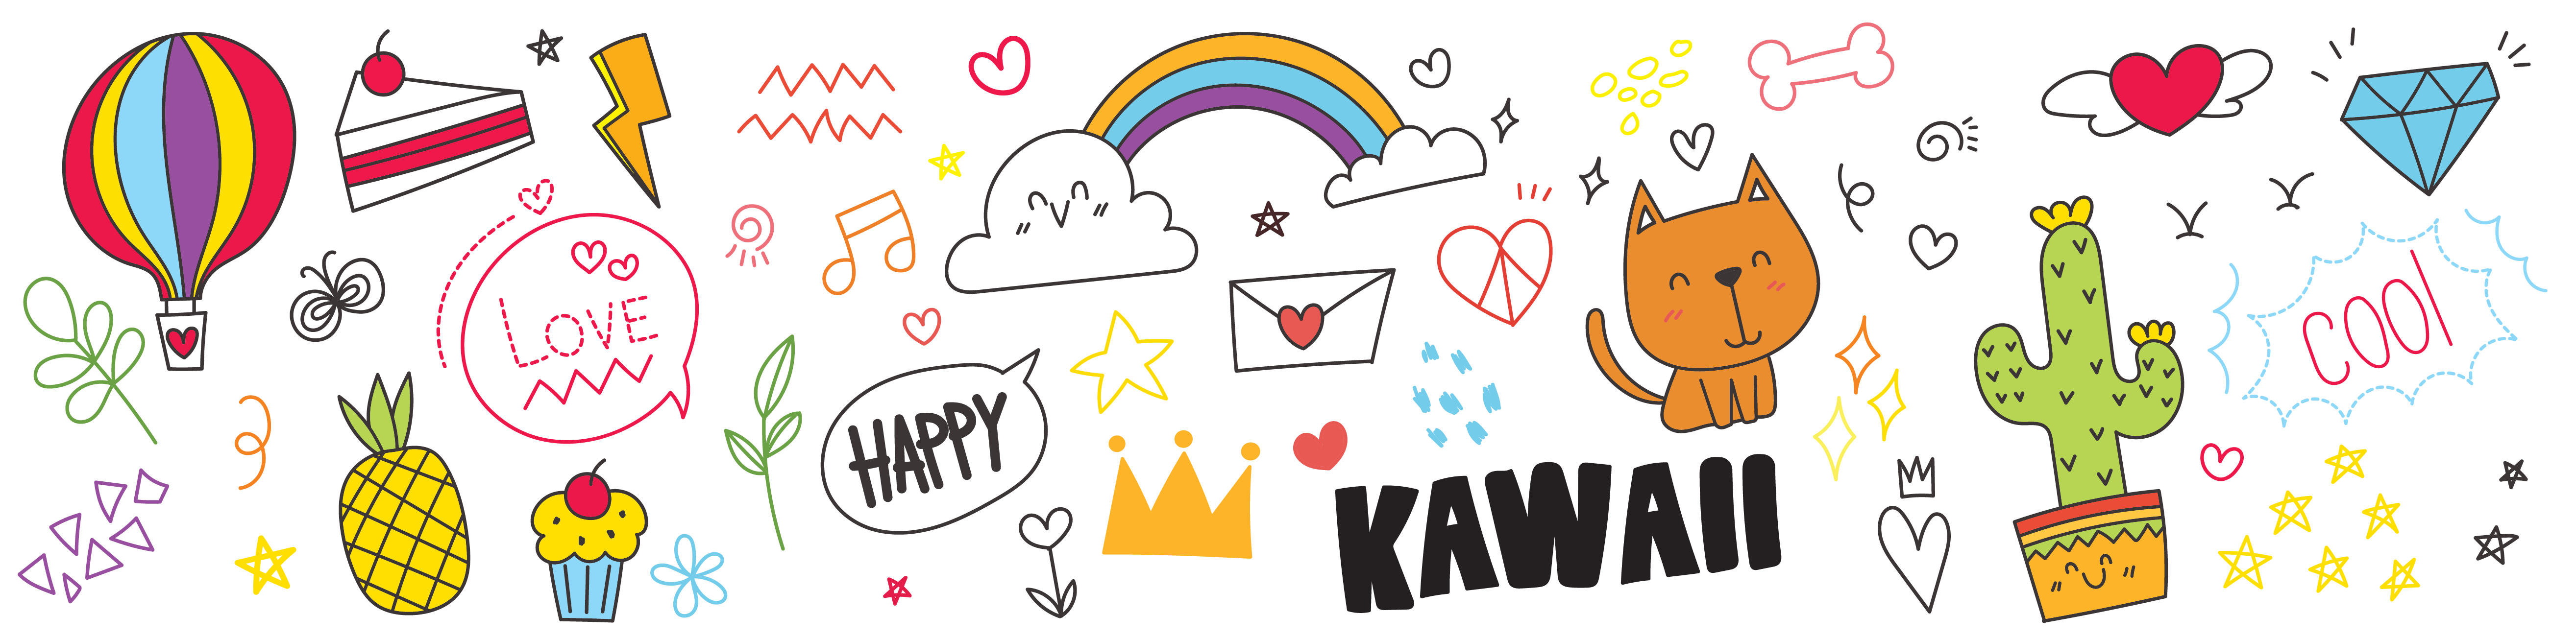 Bandeau kawaii avec des dessins mignons arc en ciel chat coeur fleurs et étiquettes Happy Kawaii et Love